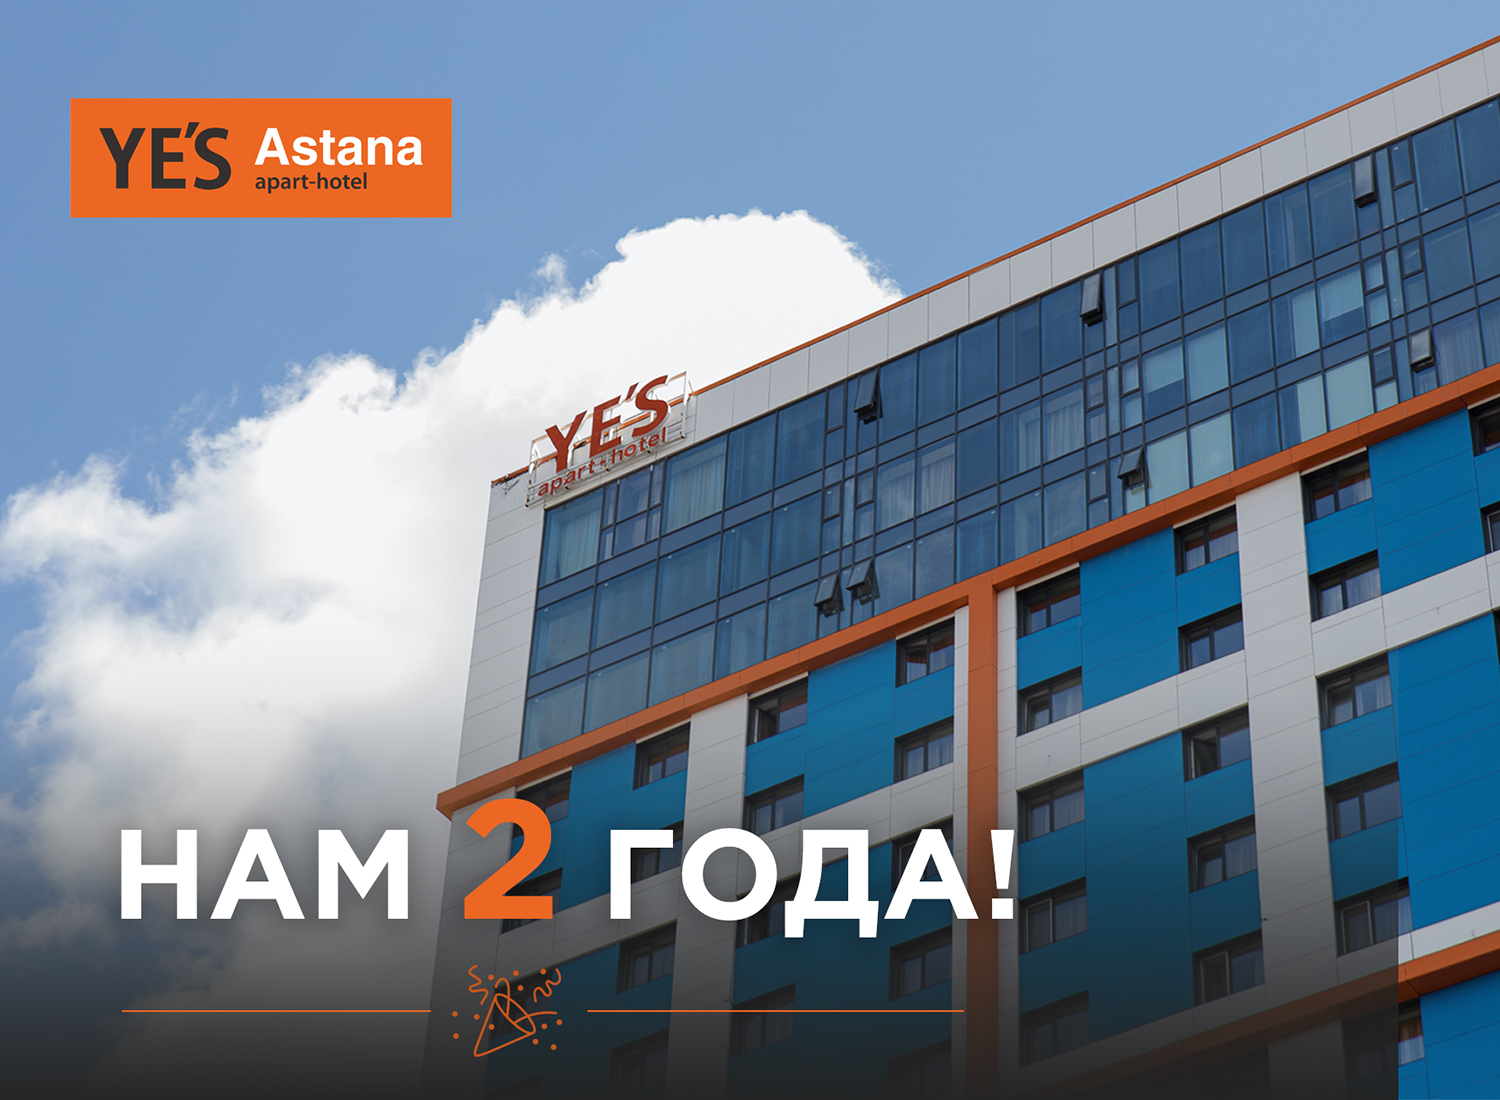 YE’S Astana – 2 года!